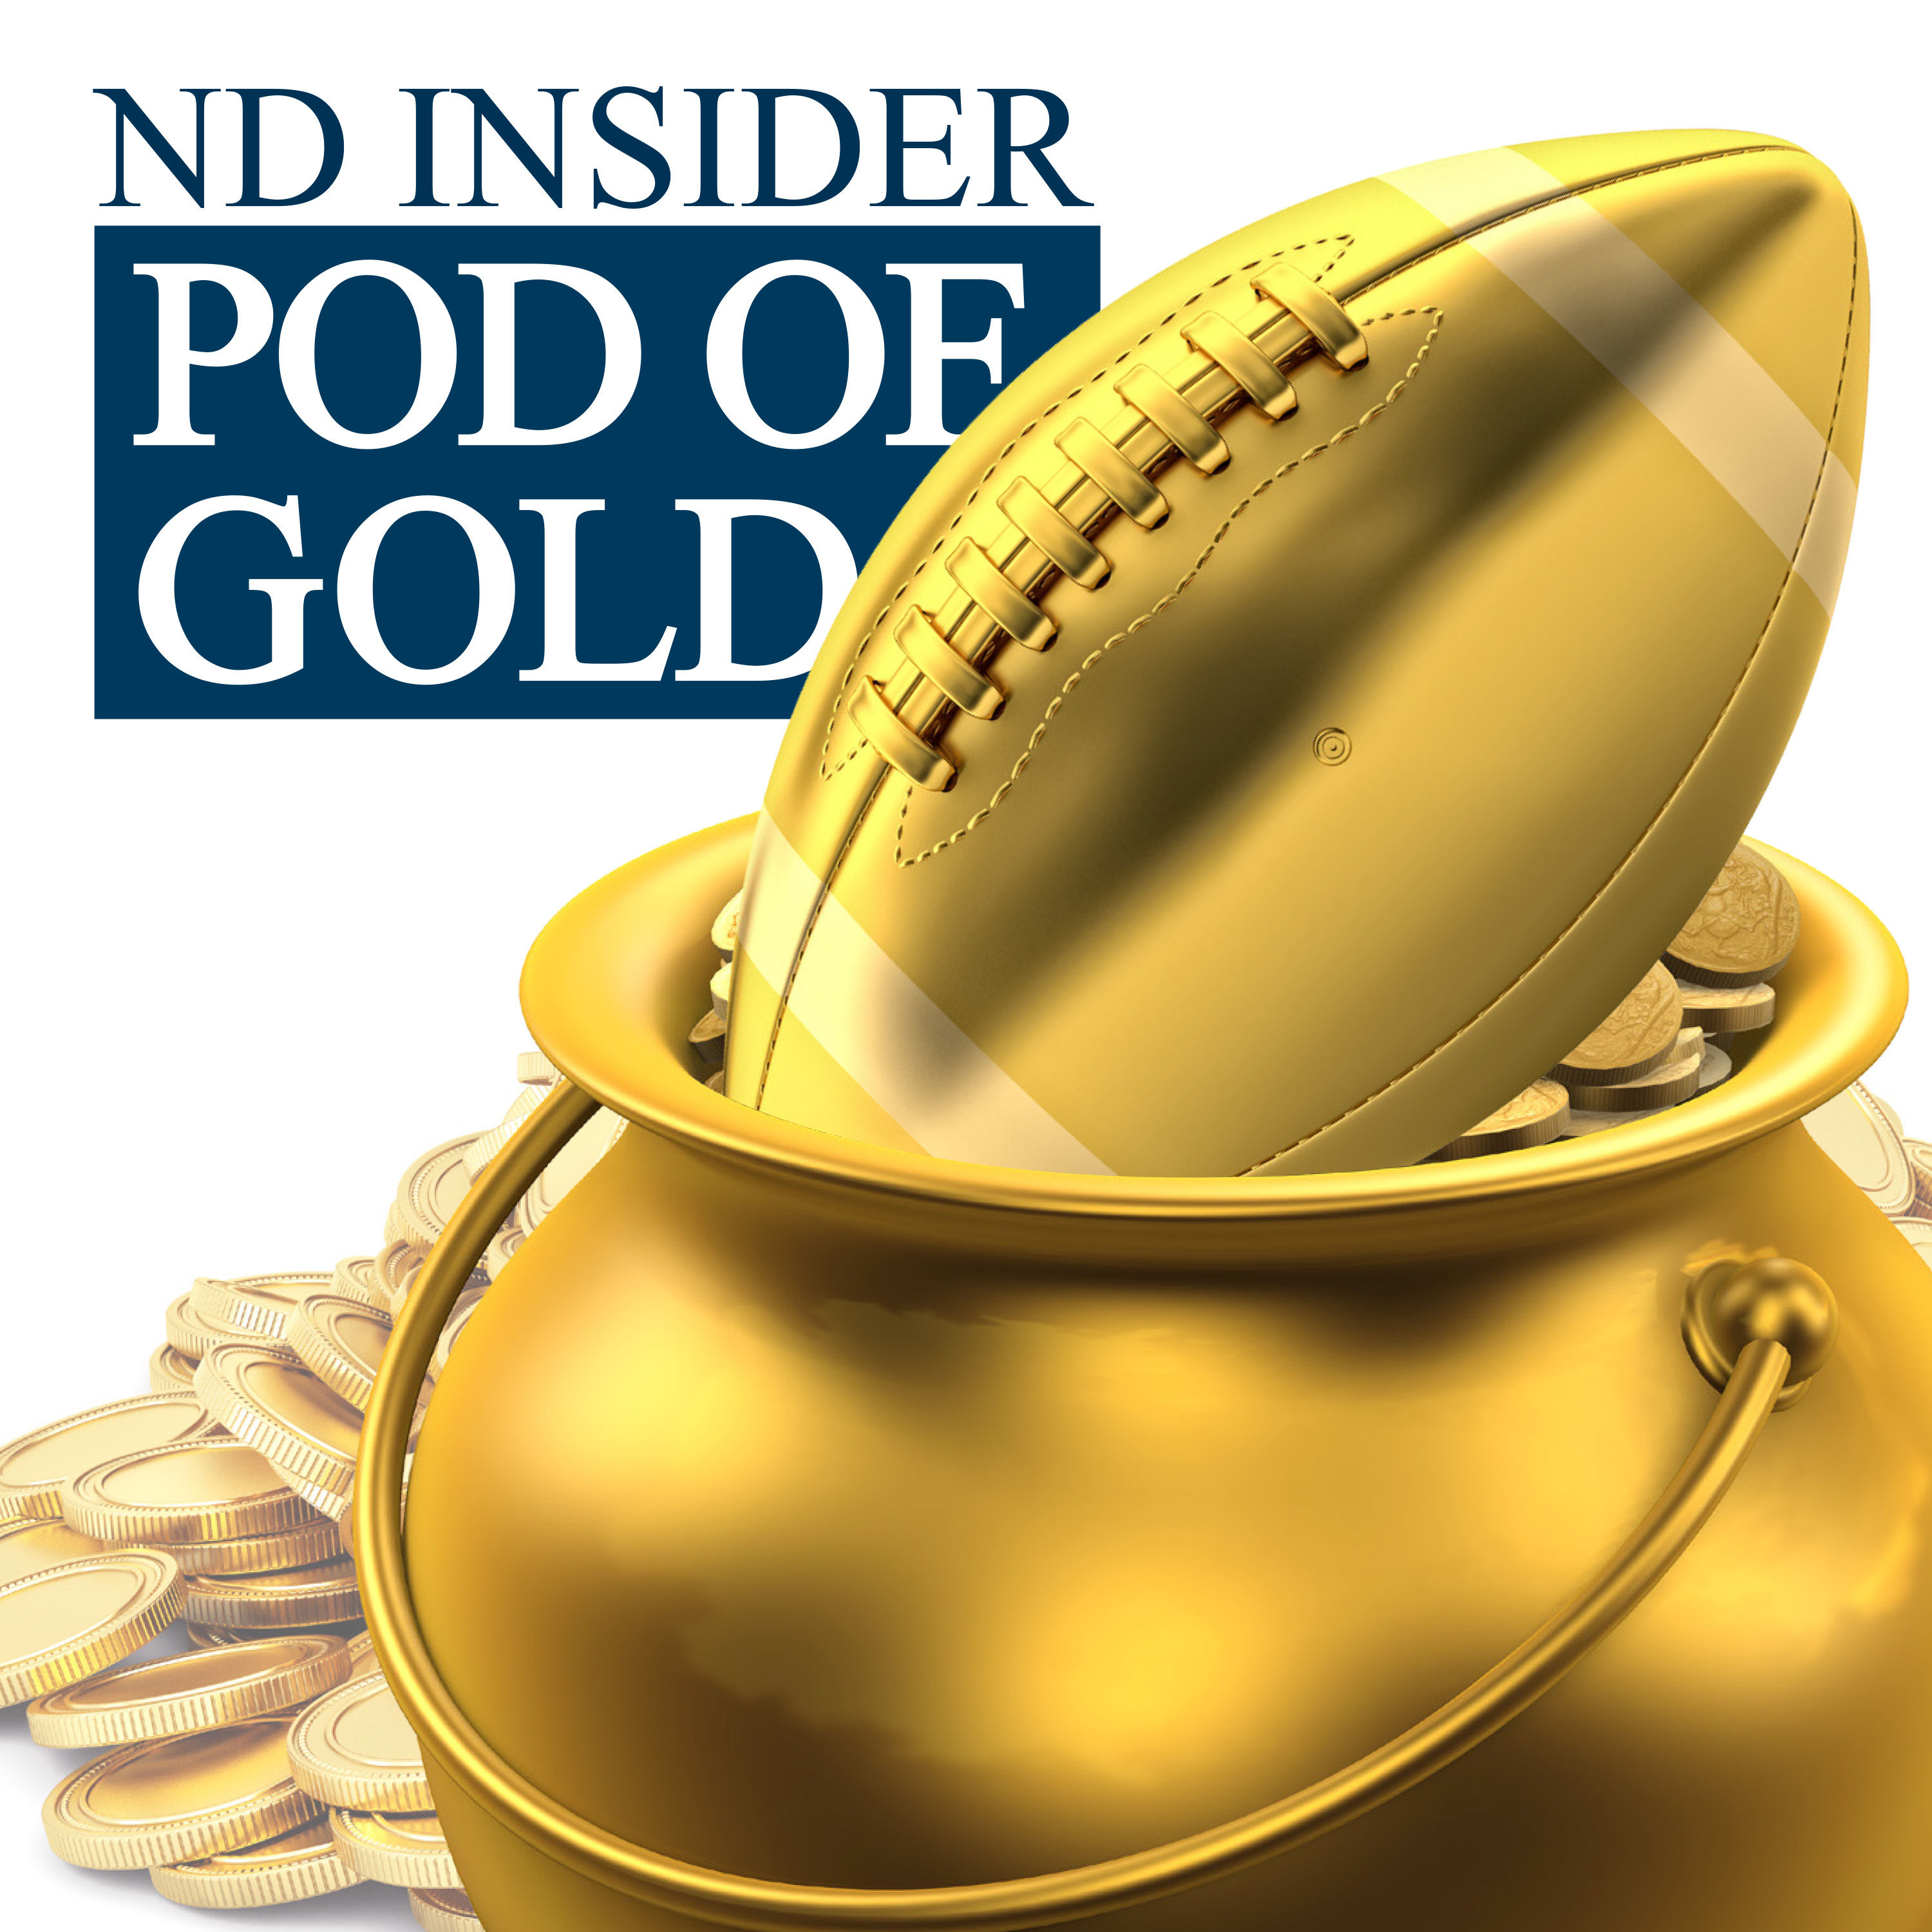 Dane Brugler on Notre Dame's top 2022 NFL Draft prospects